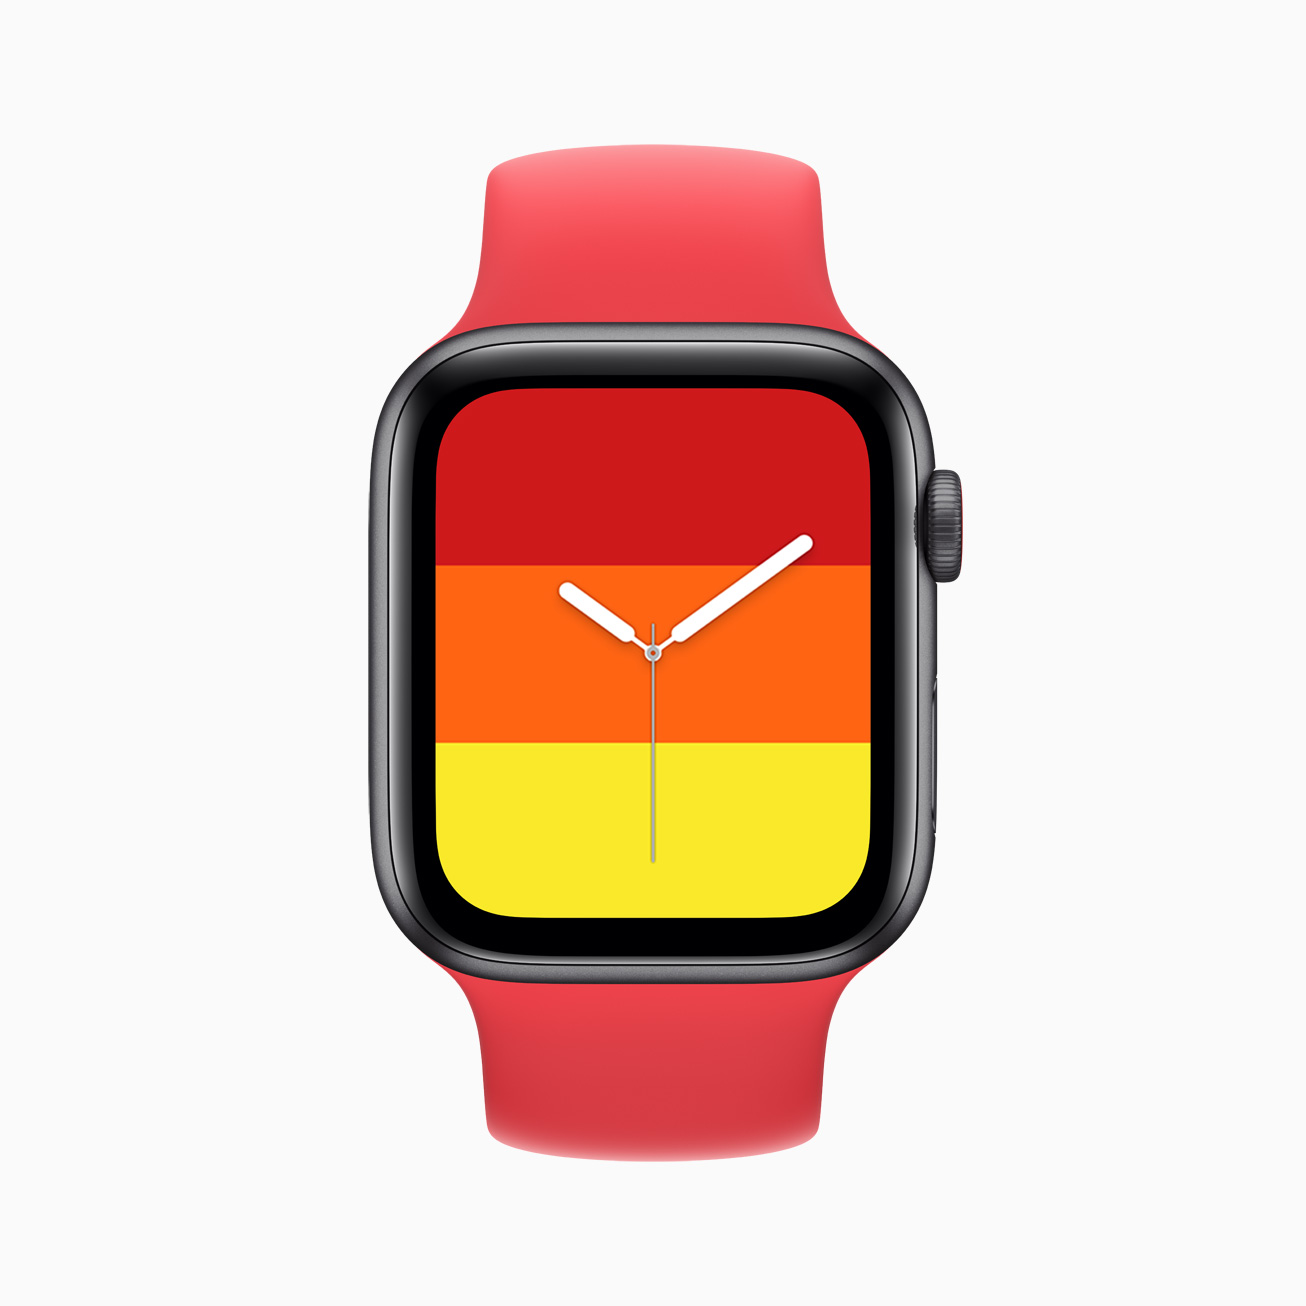 Apple watch se stripes watch face 09152020